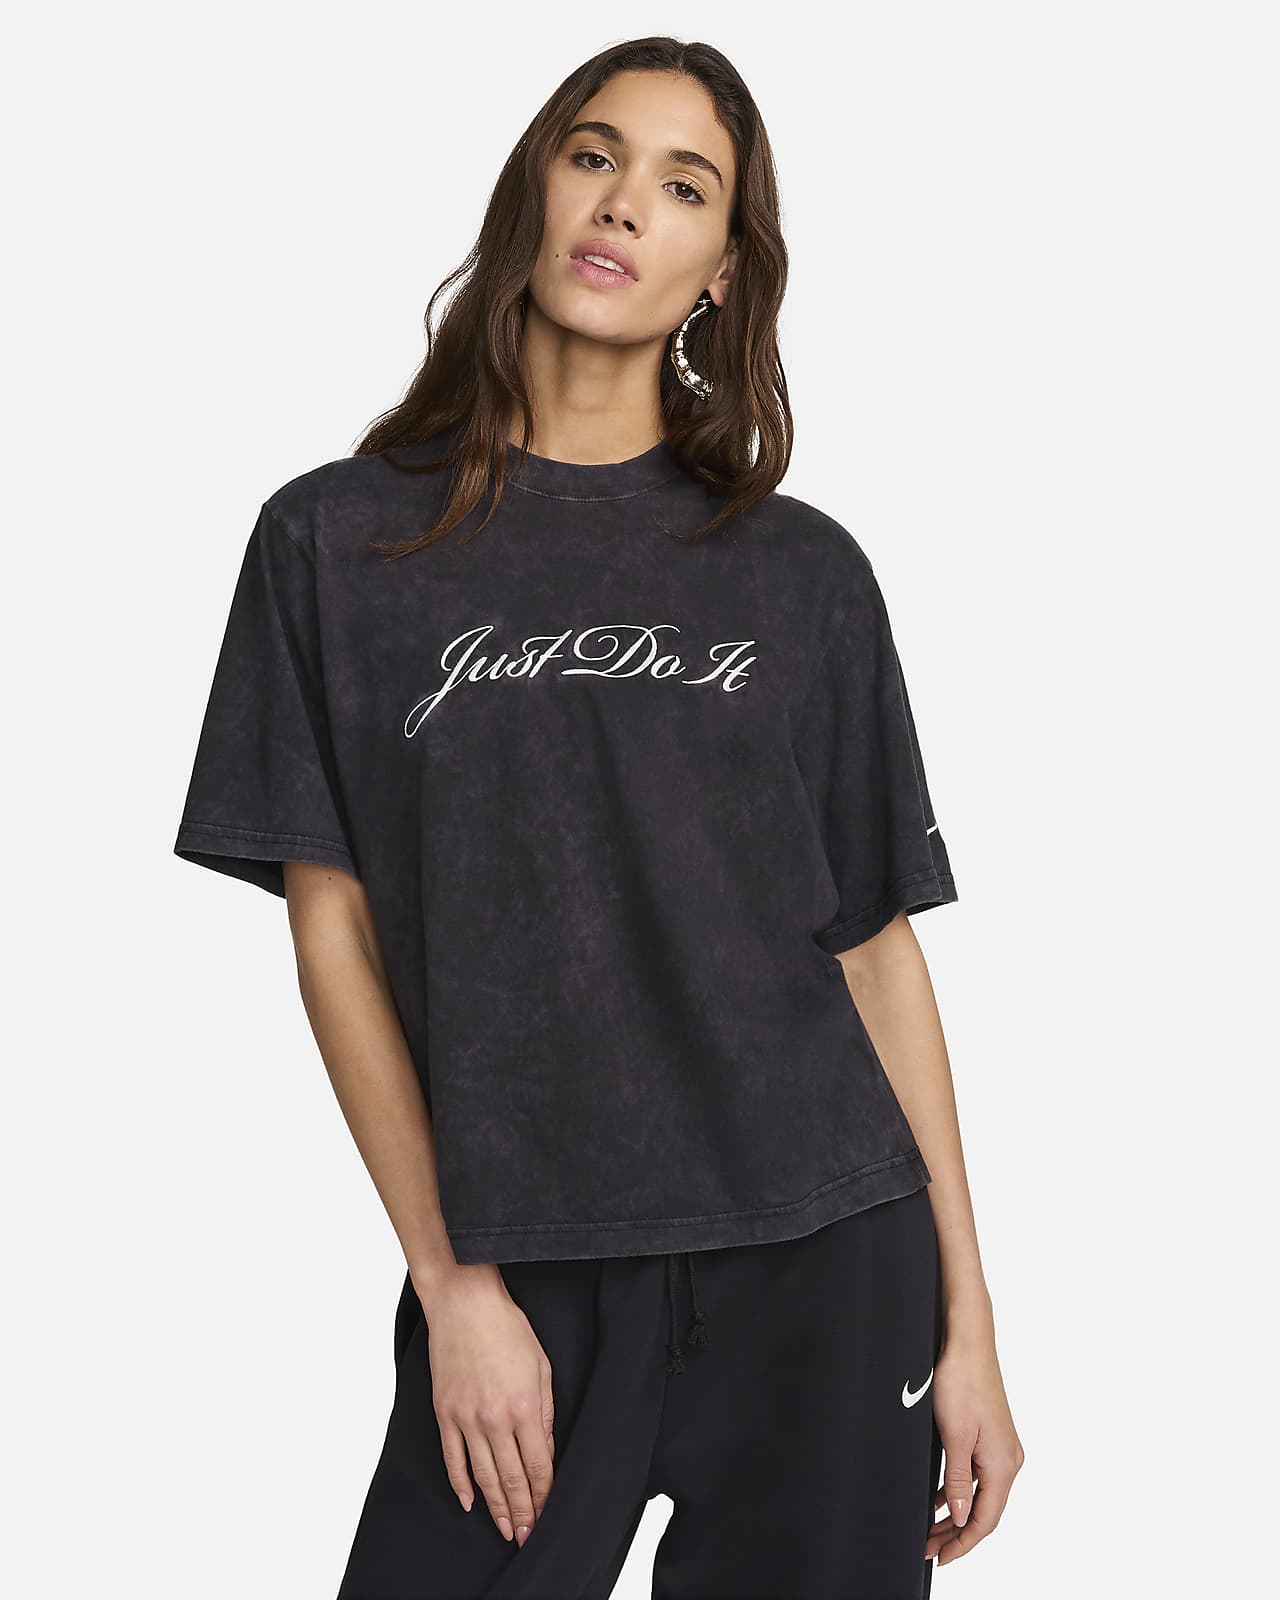 Nike Sportswear Kadın Tişörtü